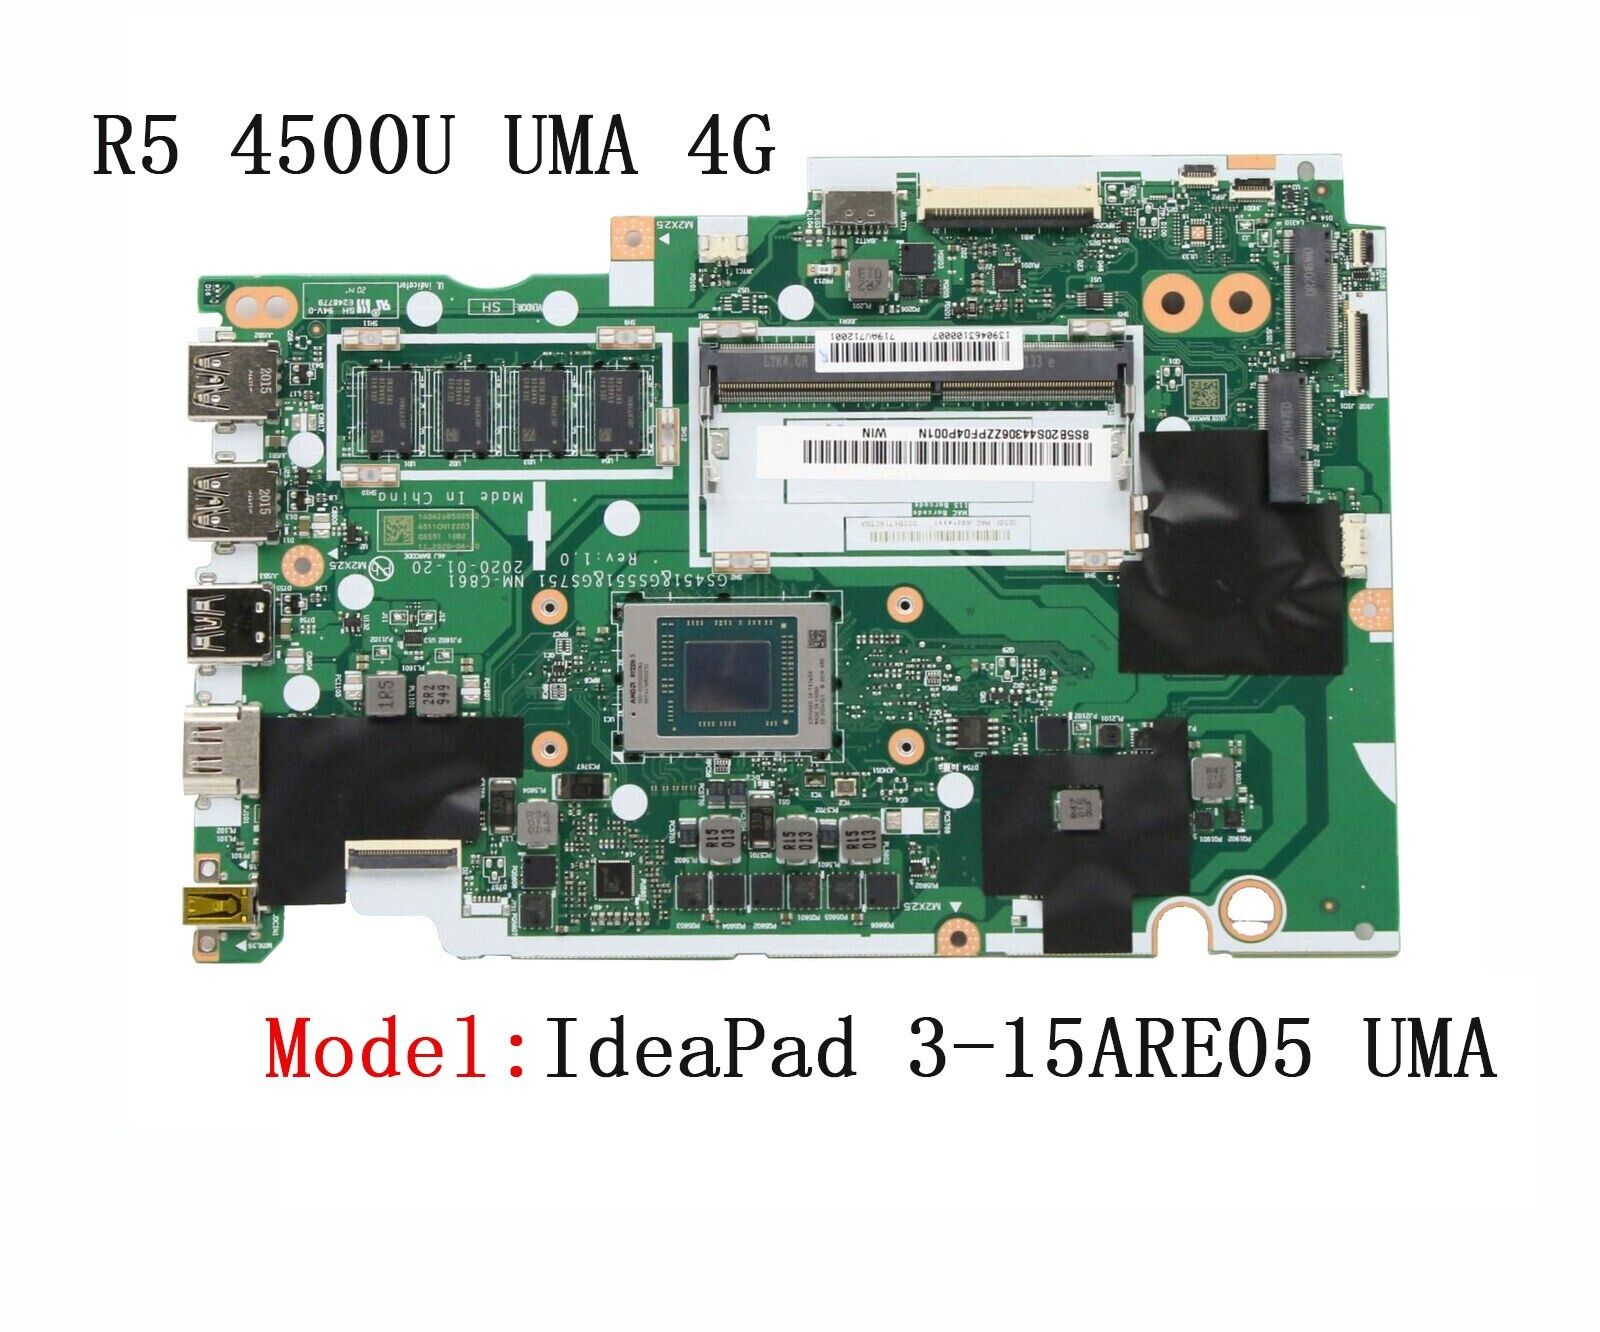 Motherboard For Lenovo IdeaPad 3-15ARE05 R5 4500U UMA 4G 5B20S44306 